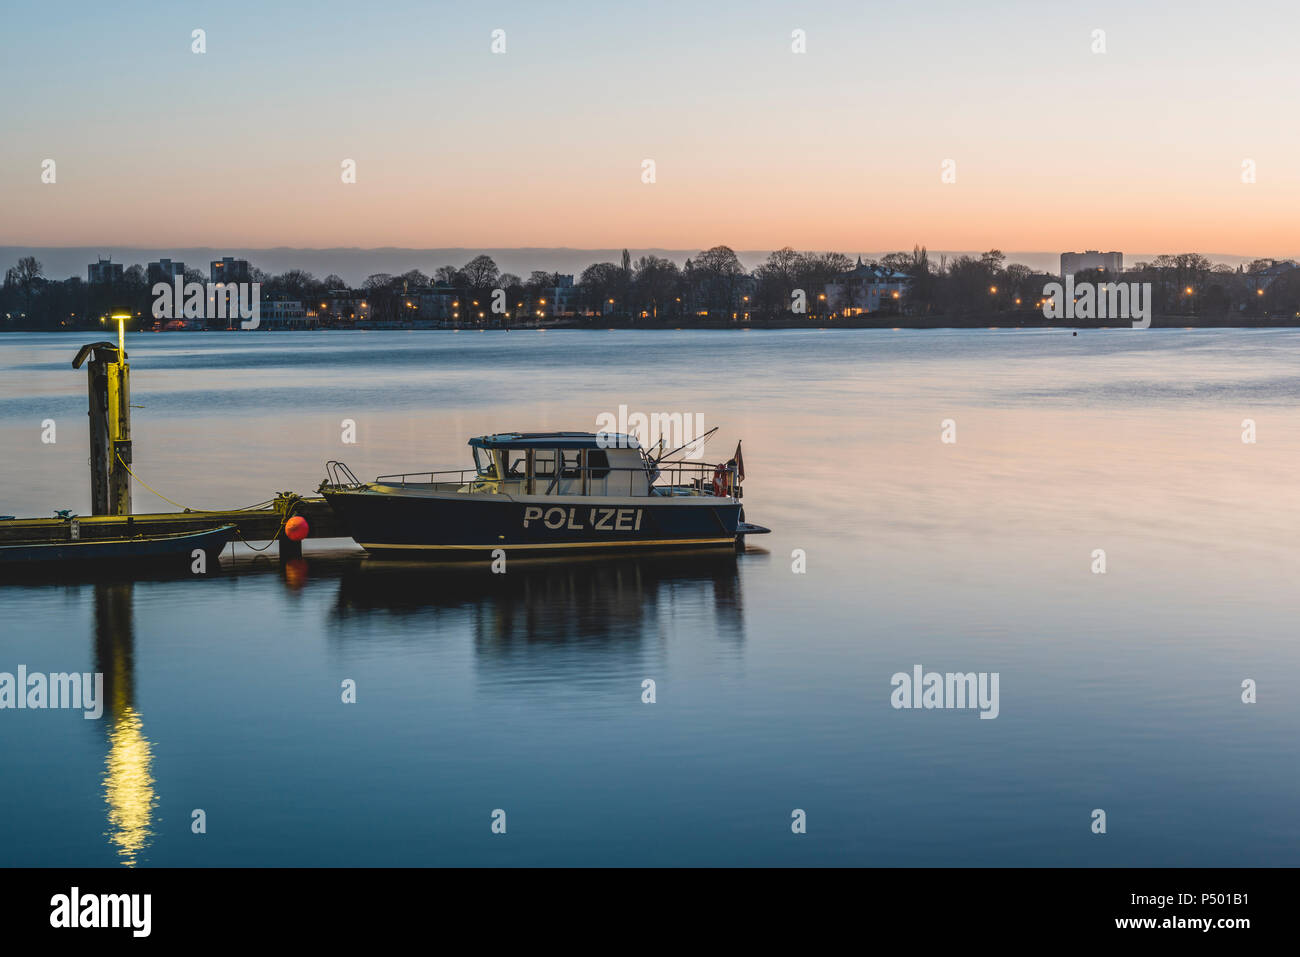 Germania, Hamburg Alster esterno ed il lago, area di ormeggio, barca di polizia al mattino Foto Stock